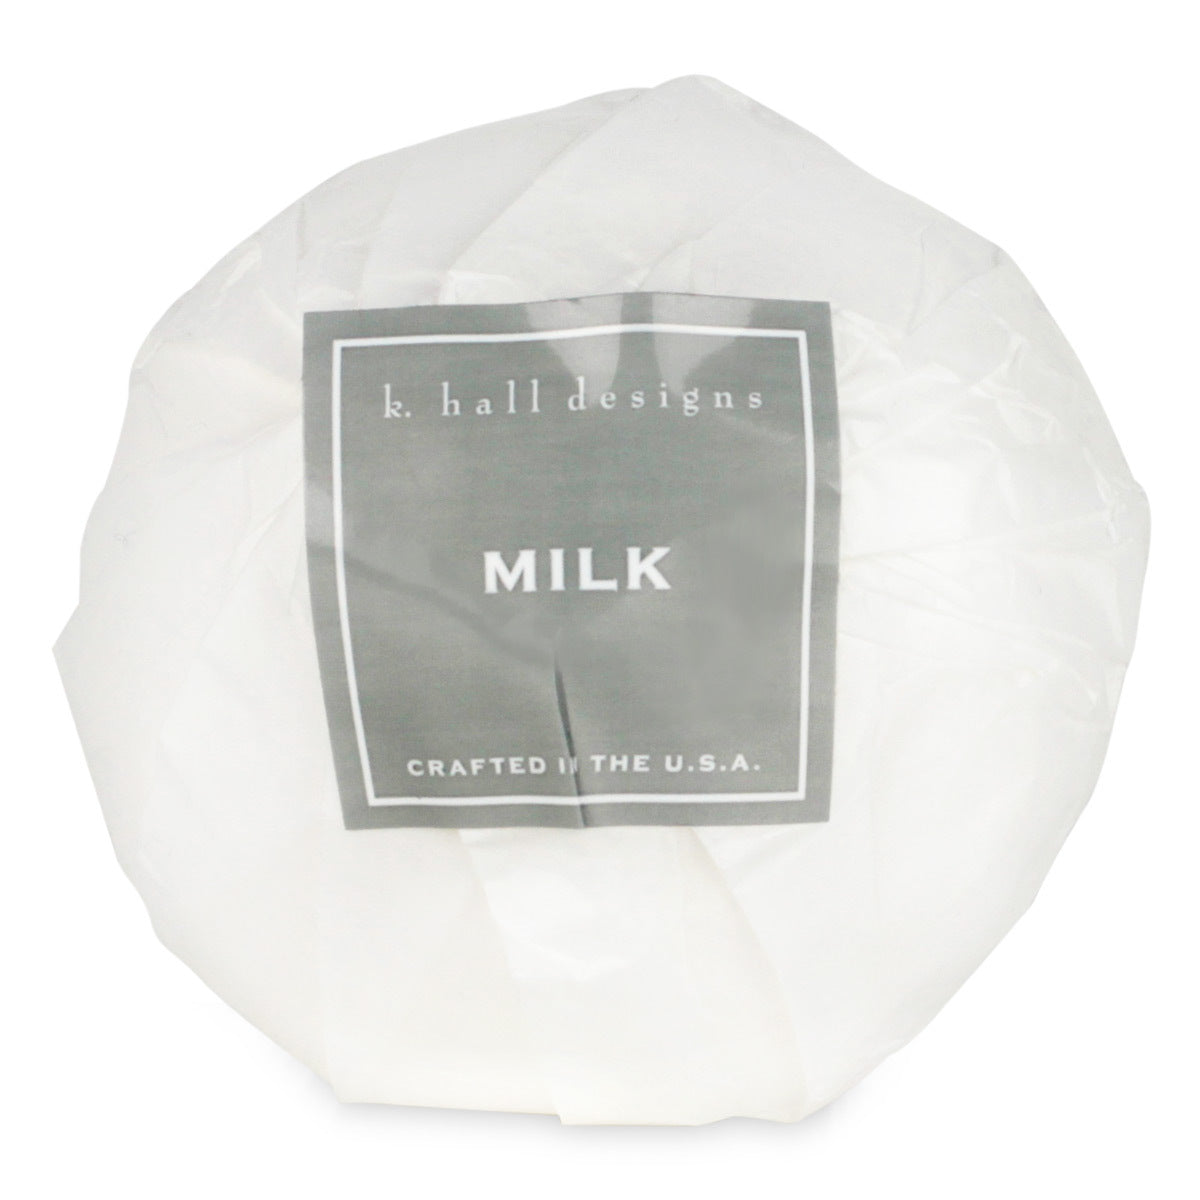 Primary image of Milk Bath Bomb